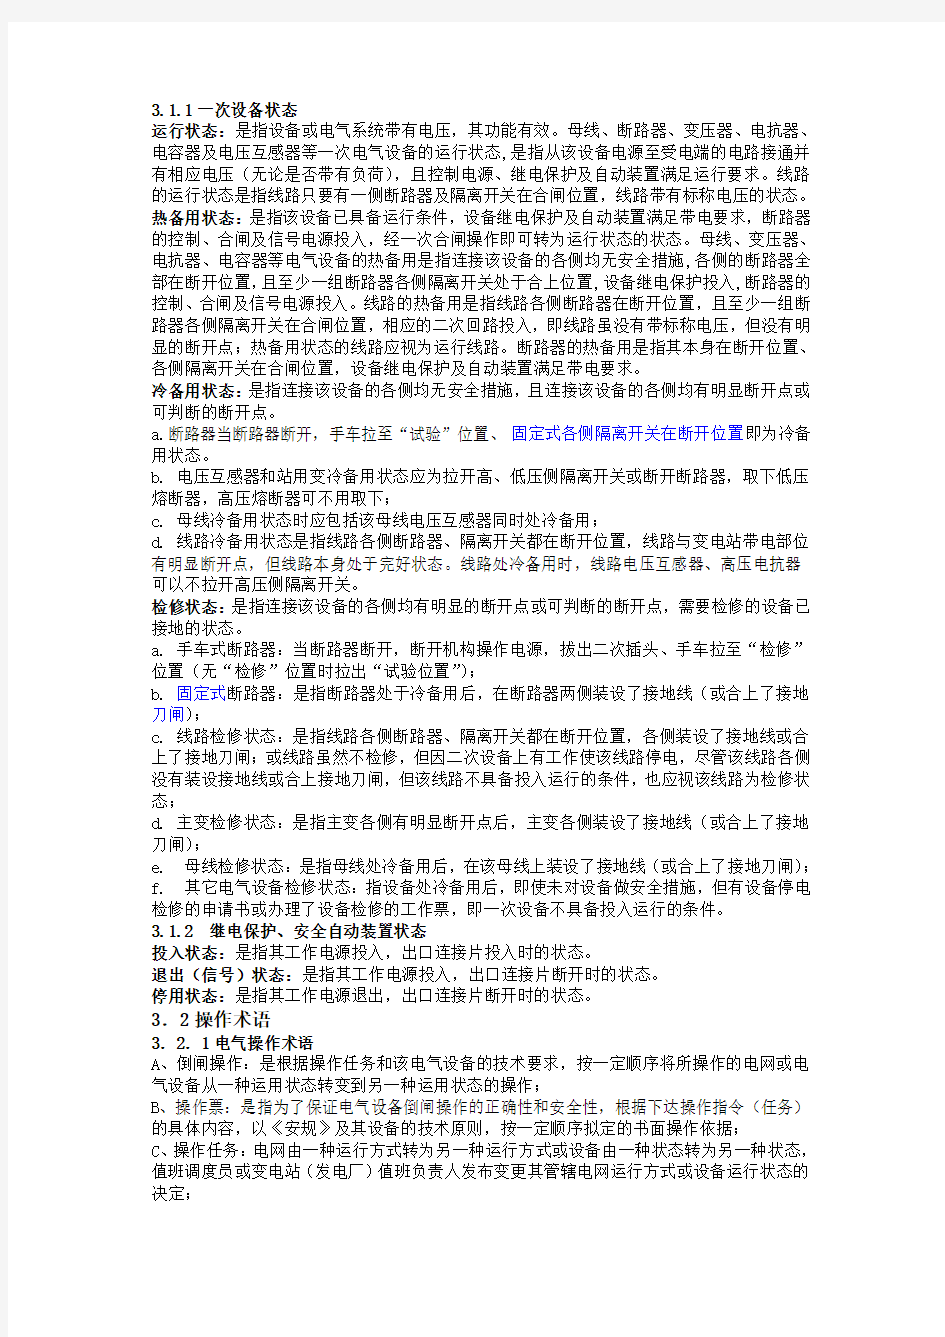 中石化天津分公司操作票管理实施规定